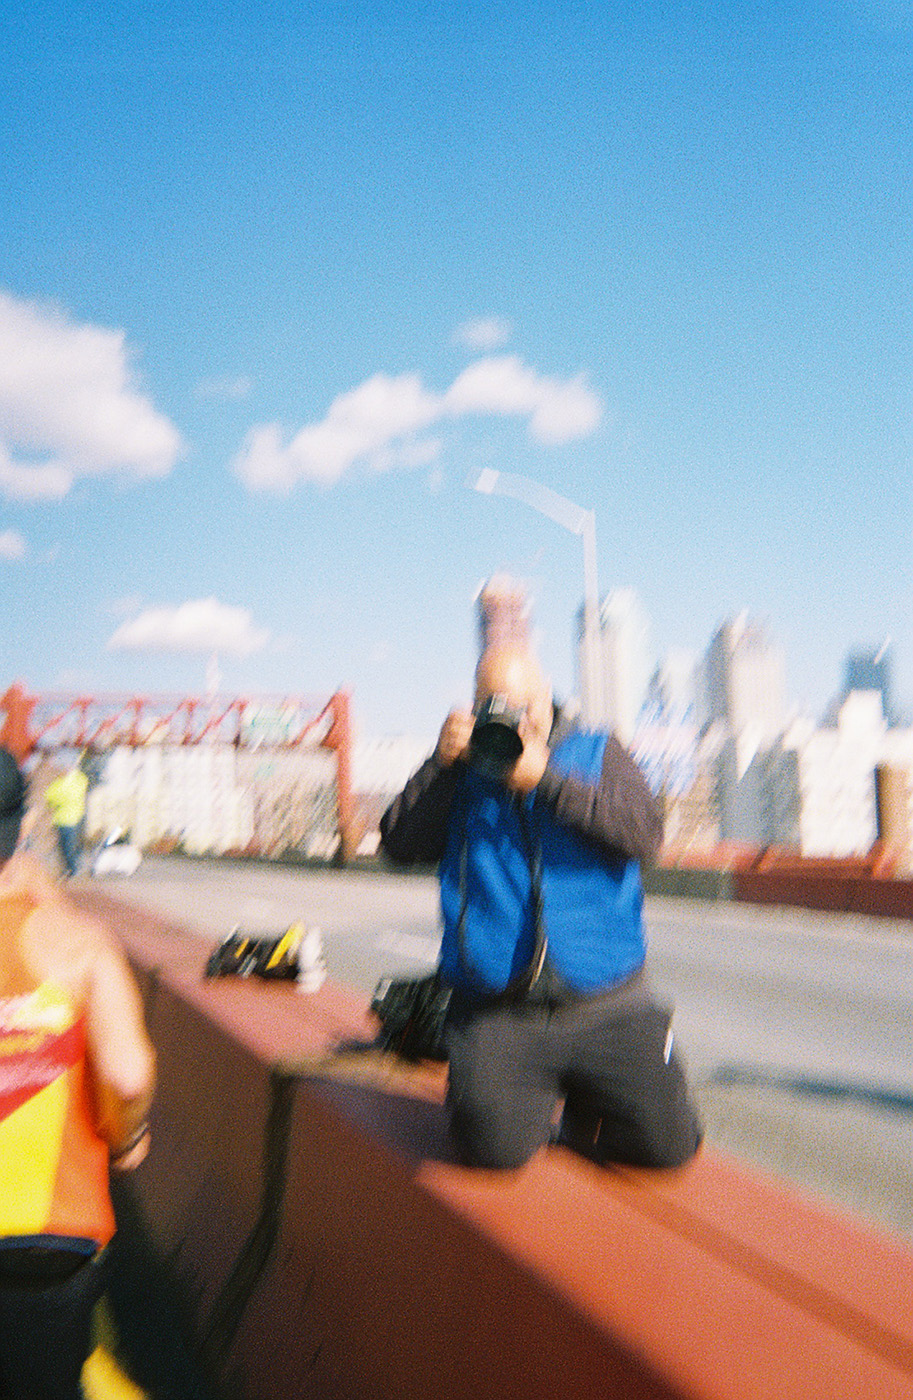 Нью-Йоркский марафон в 30 кадрах, сделанных на плёночный фотоаппарат